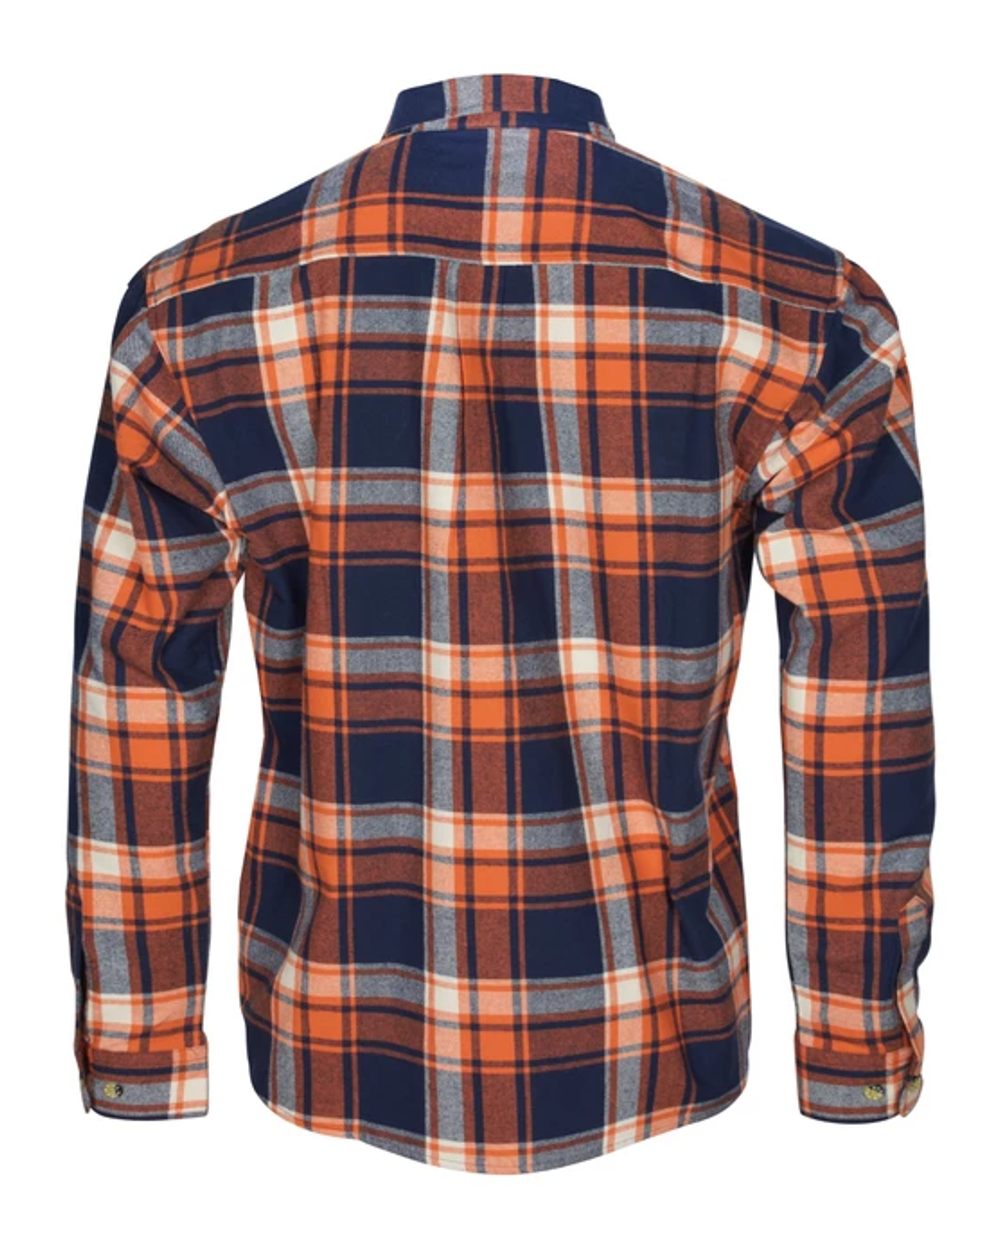 Pinewood Härjedalen Shirt in Navy/Orange